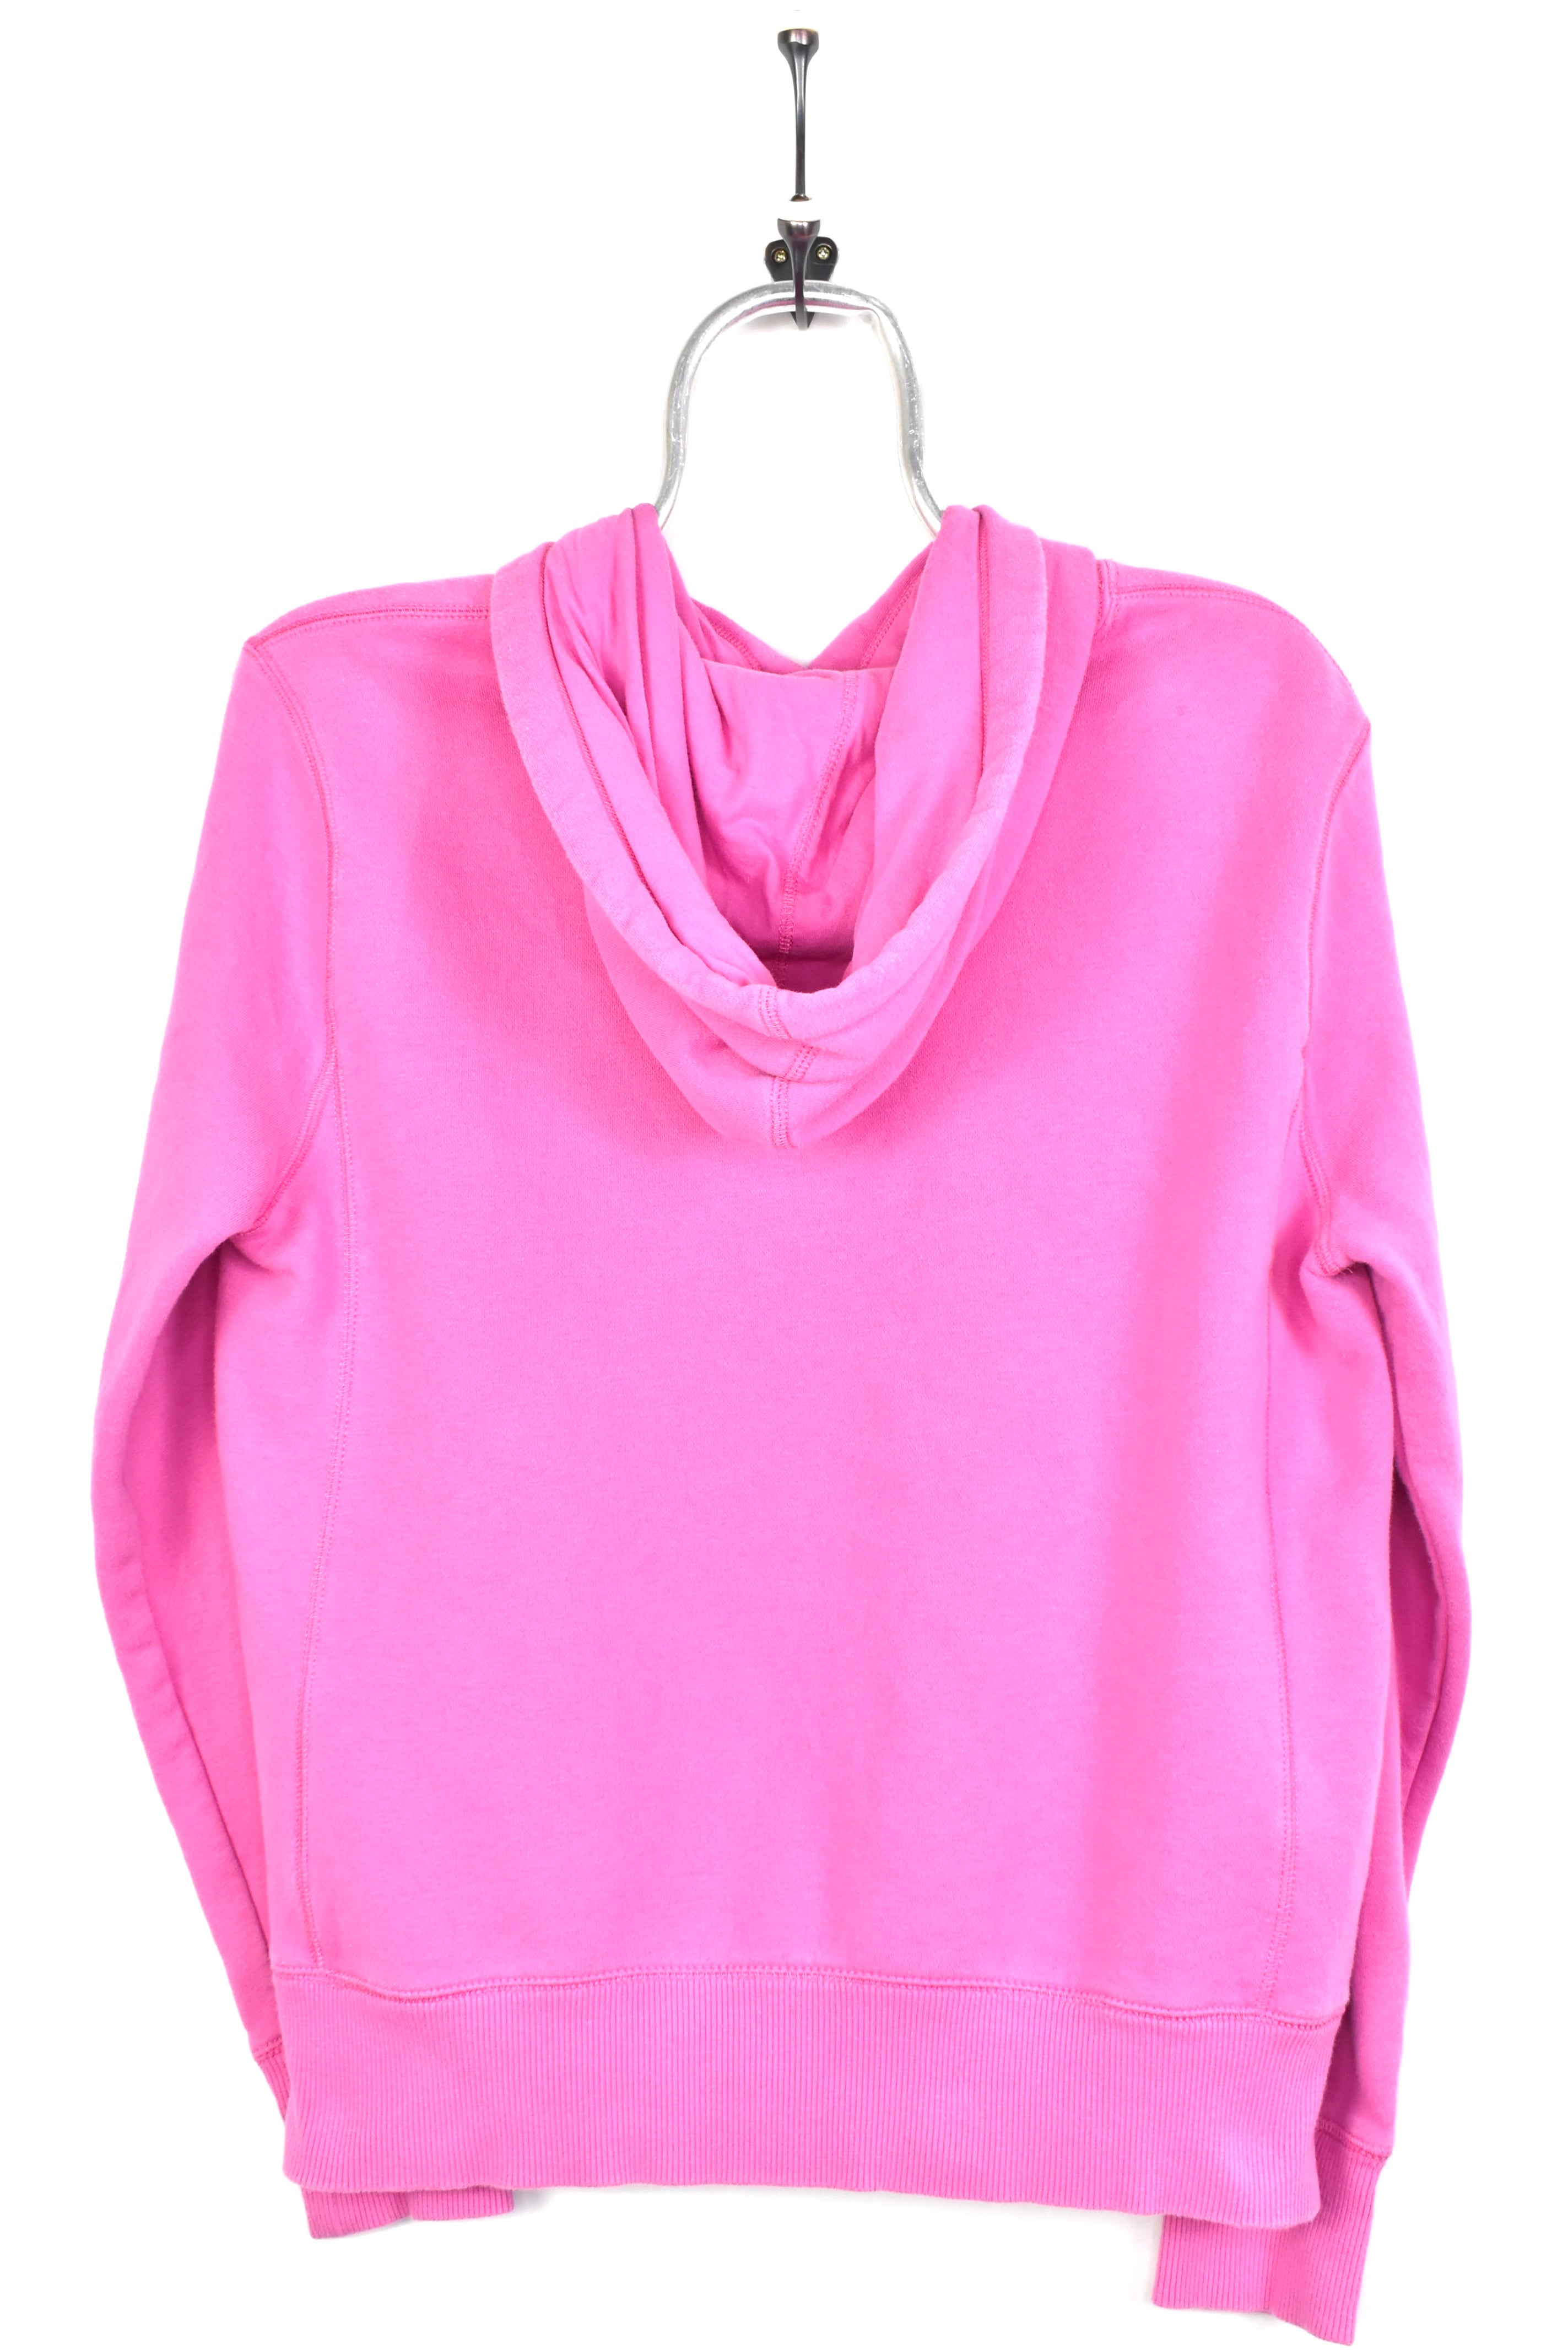 Vintage women's Nike hoodie, pullover embroidered sweatshirt - large, pink NIKE